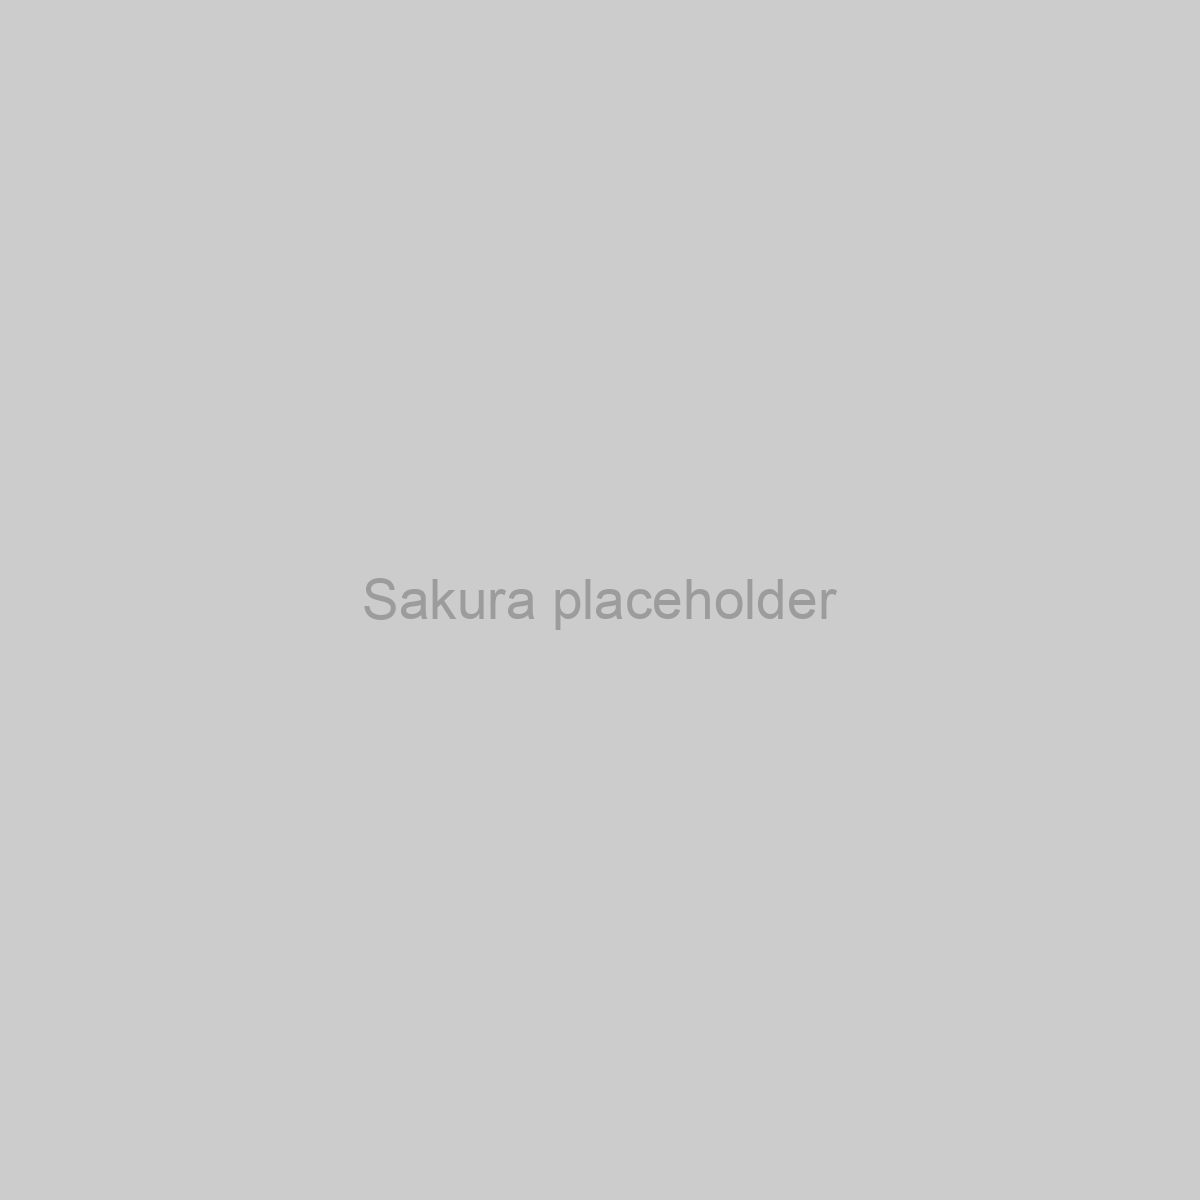 Sakura Placeholder Image